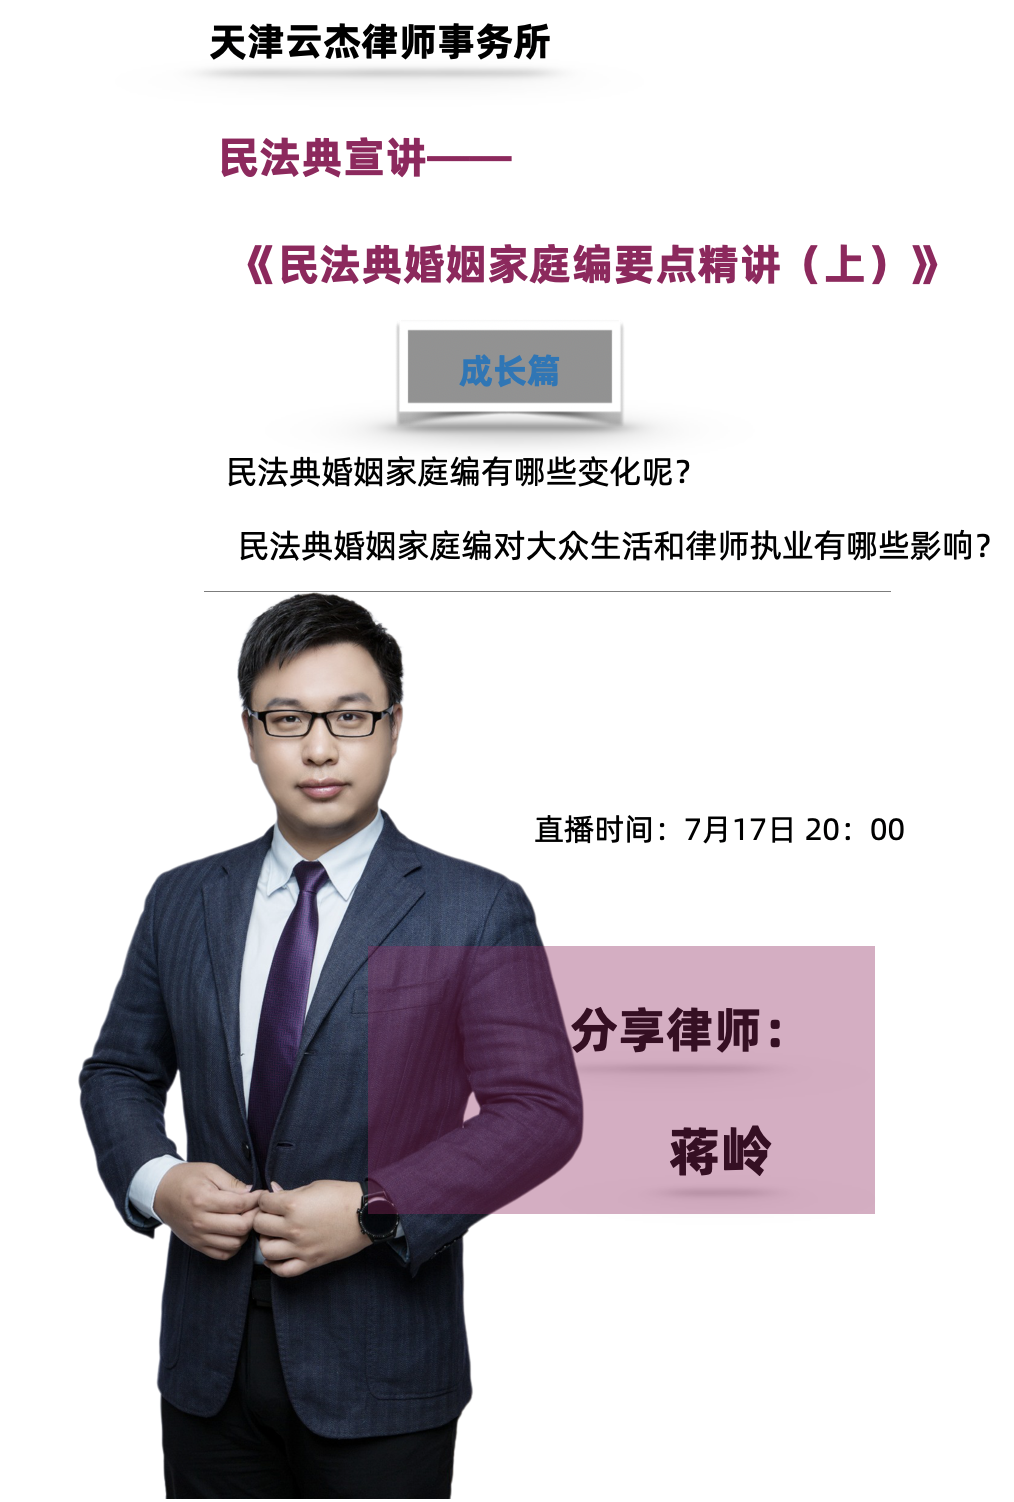 今晚8点天津云杰律师事务所蒋岭律师直播宣讲《民法典婚姻家庭编要点》